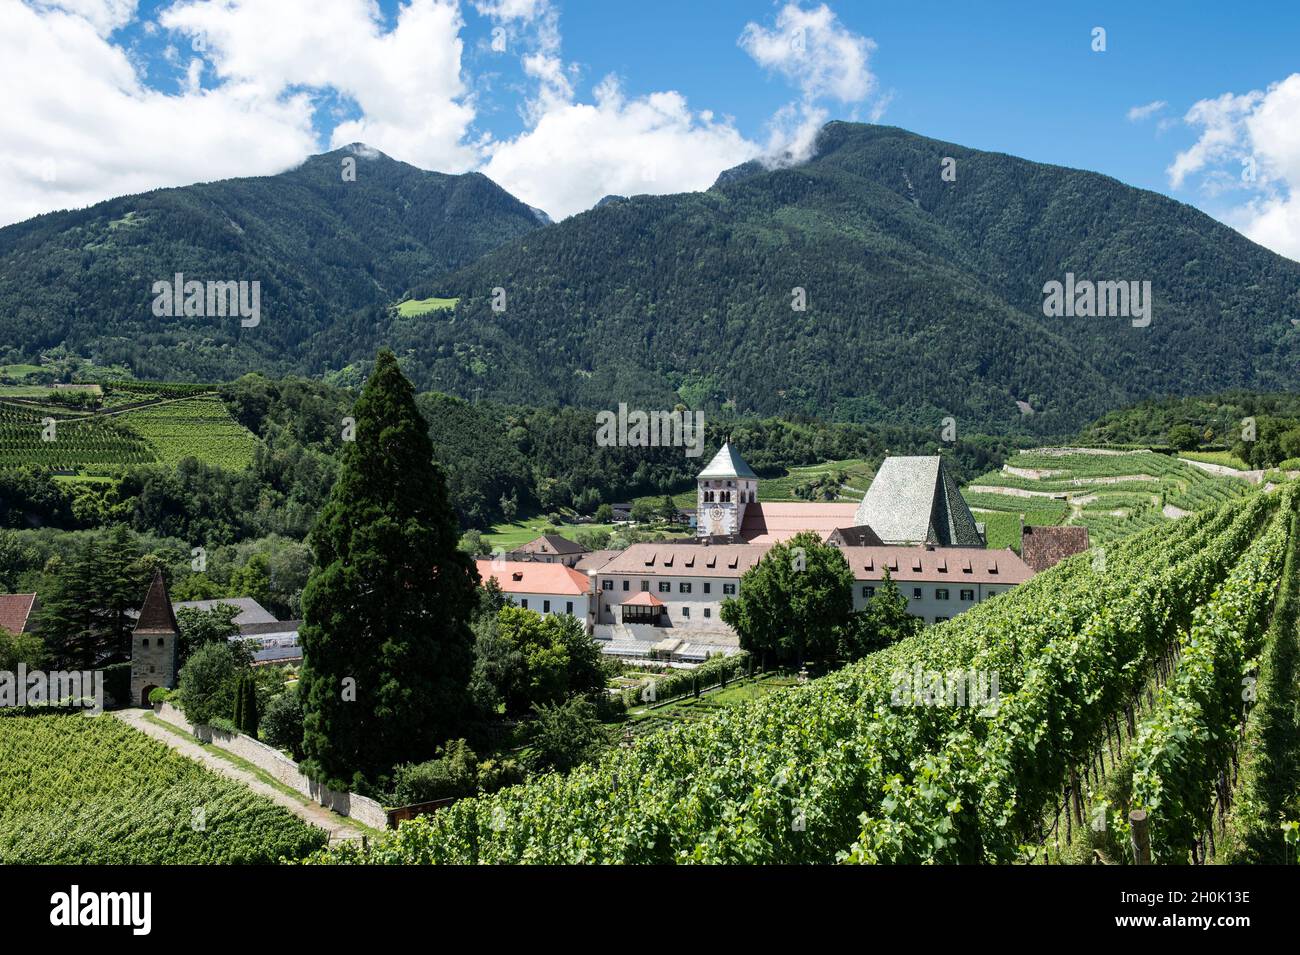 Italy, Alto Adige, Bressanone, Novacella Abbey and vineyards Stock Photo